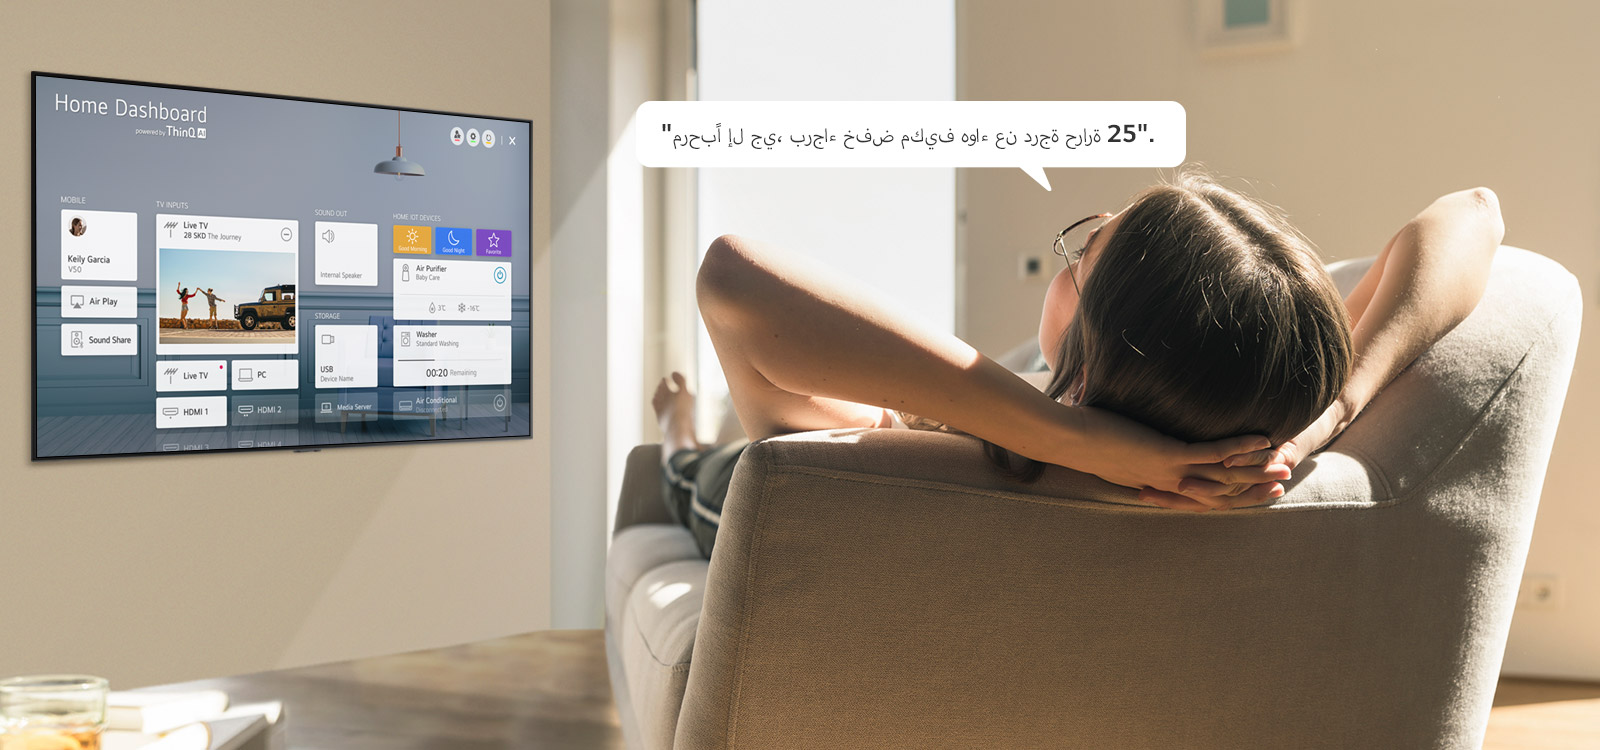 امرأة مستلقية على الأريكة تطلب من التلفزيون خفض درجة الحرارة باستخدام لوحة المعلومات المنزلية على شاشة التلفزيون